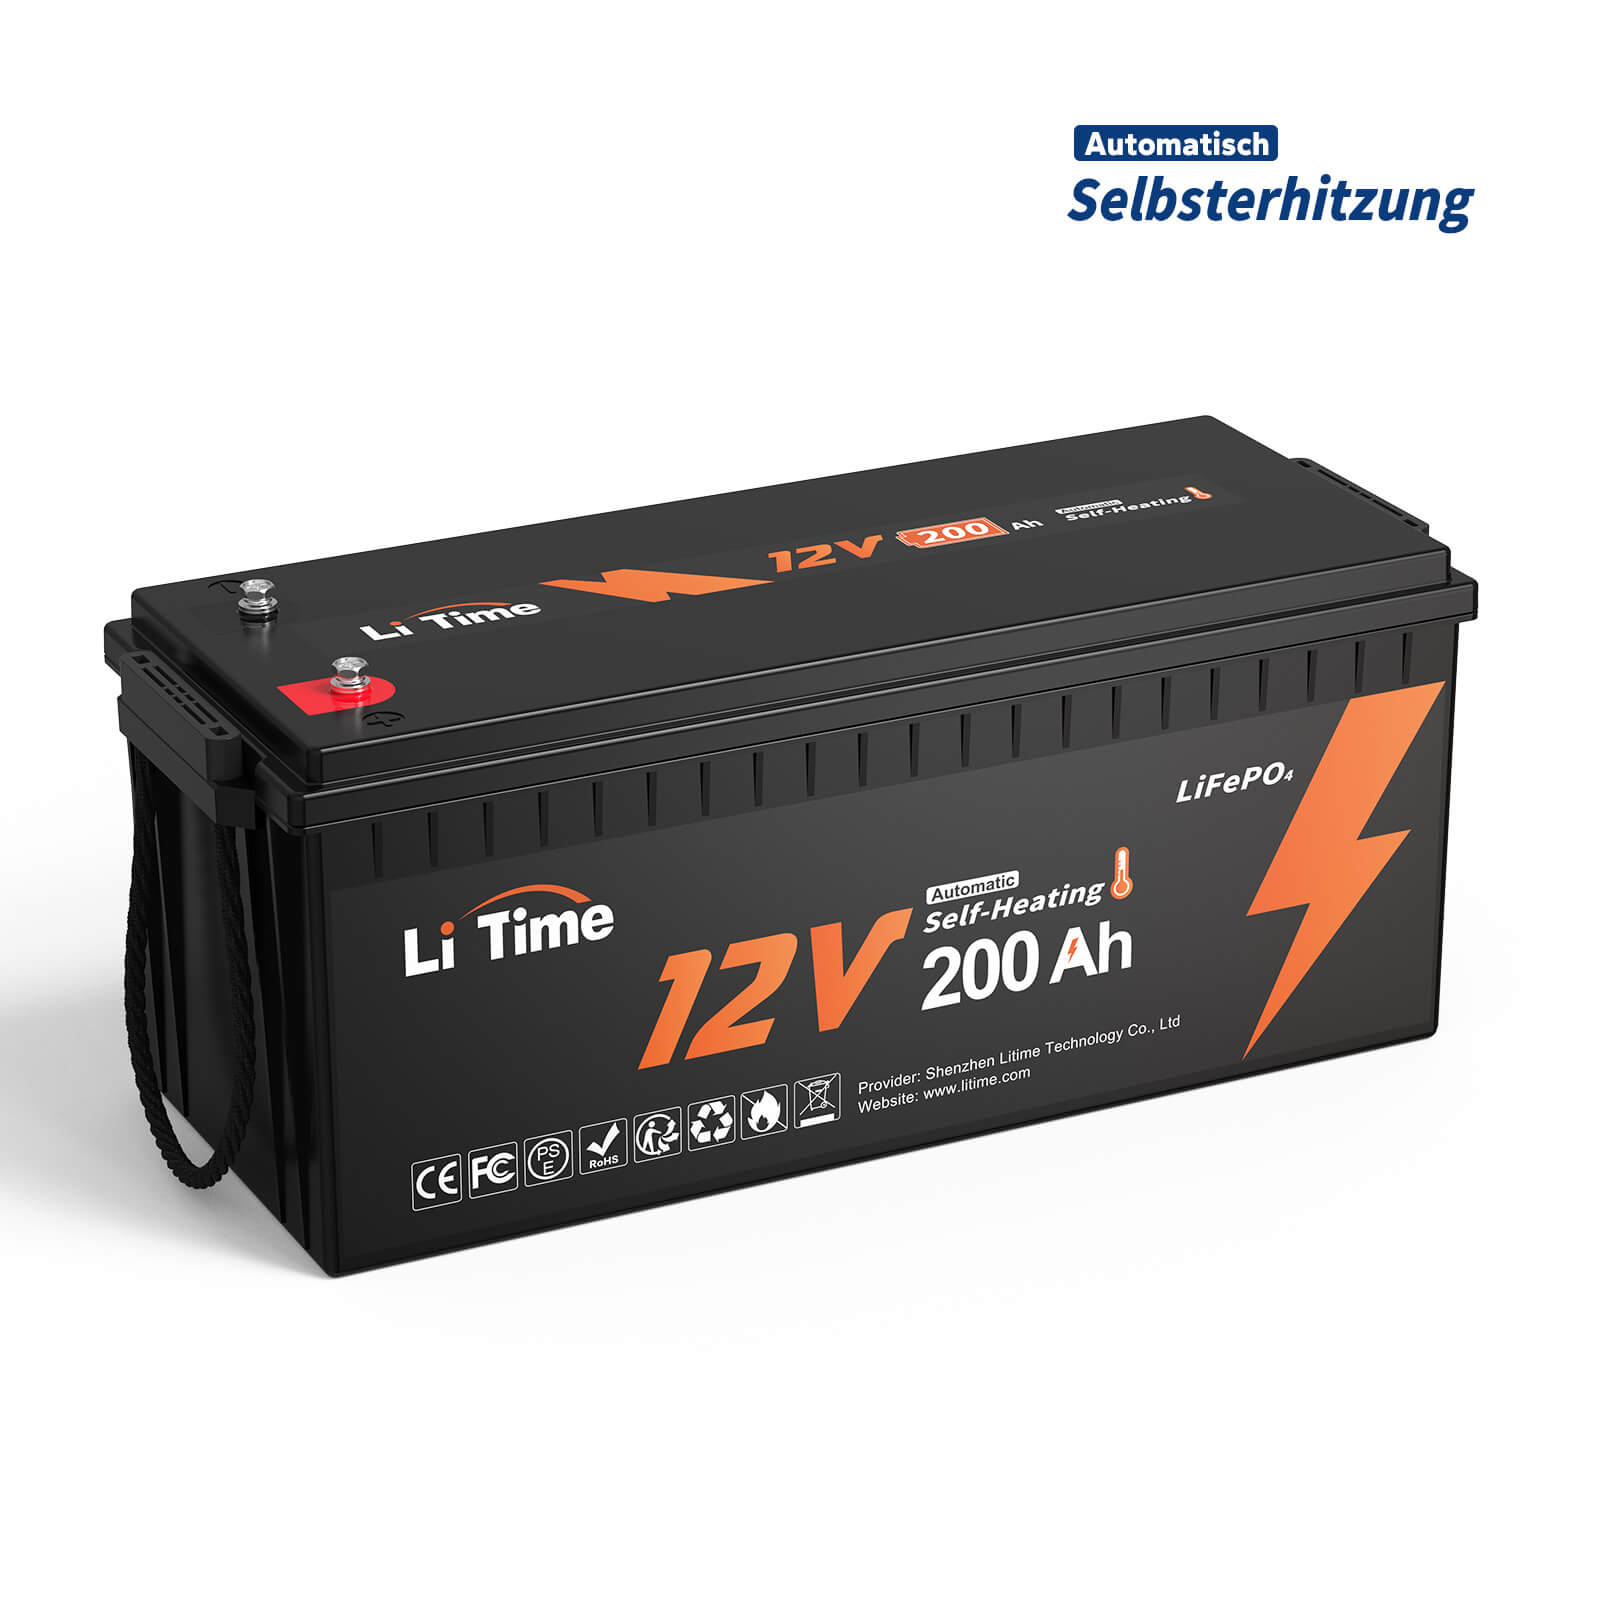 【0% MwSt.】LiTime 12V 200Ah Selbsterwärmende LiFePO4 Lithium Batterie mit 100A BMS, unterstützt Niedrige Temp. Aufladen -20°C